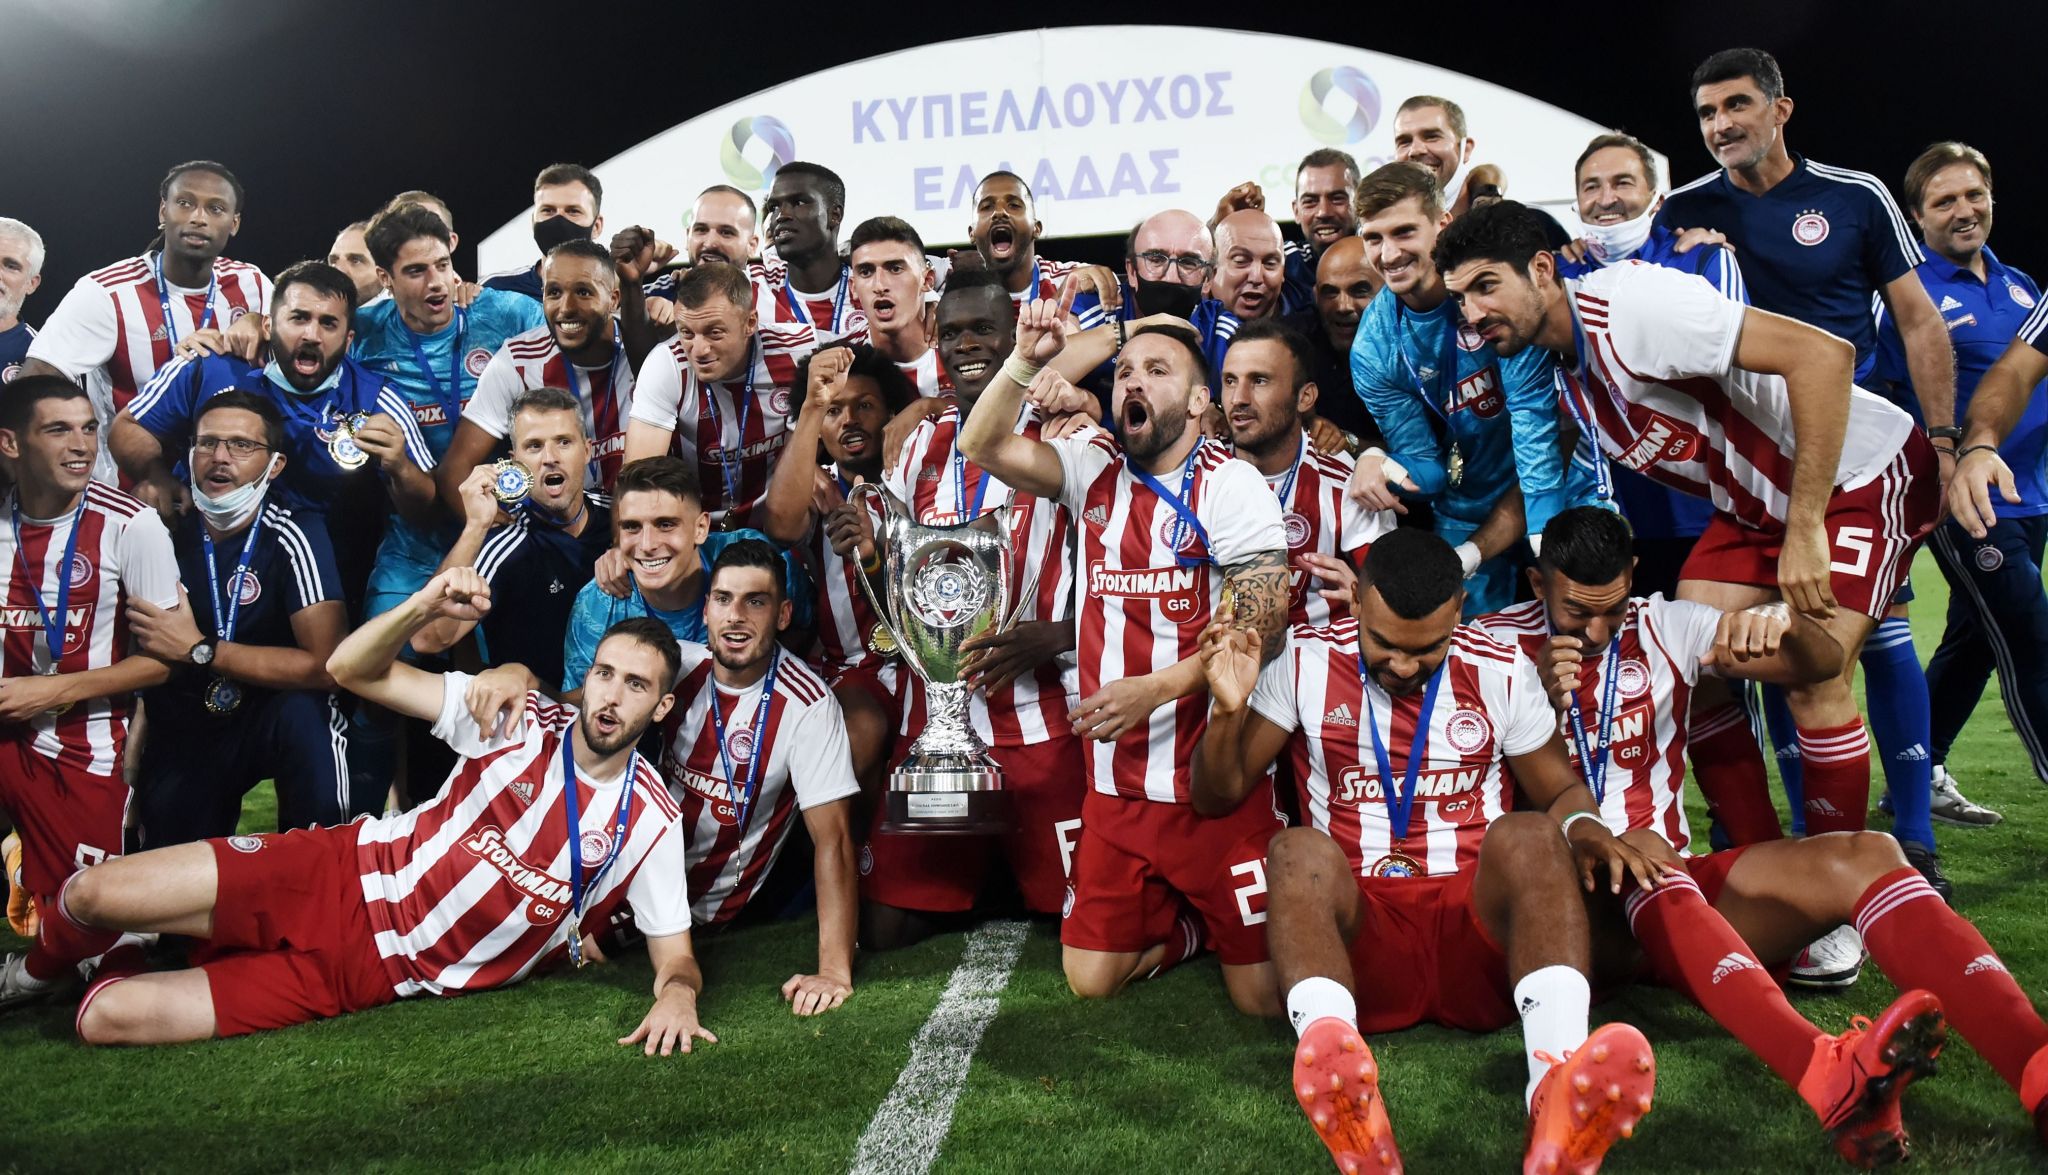 Ολυμπιακός: Νταμπλούχος Ελλάδας 2019/20